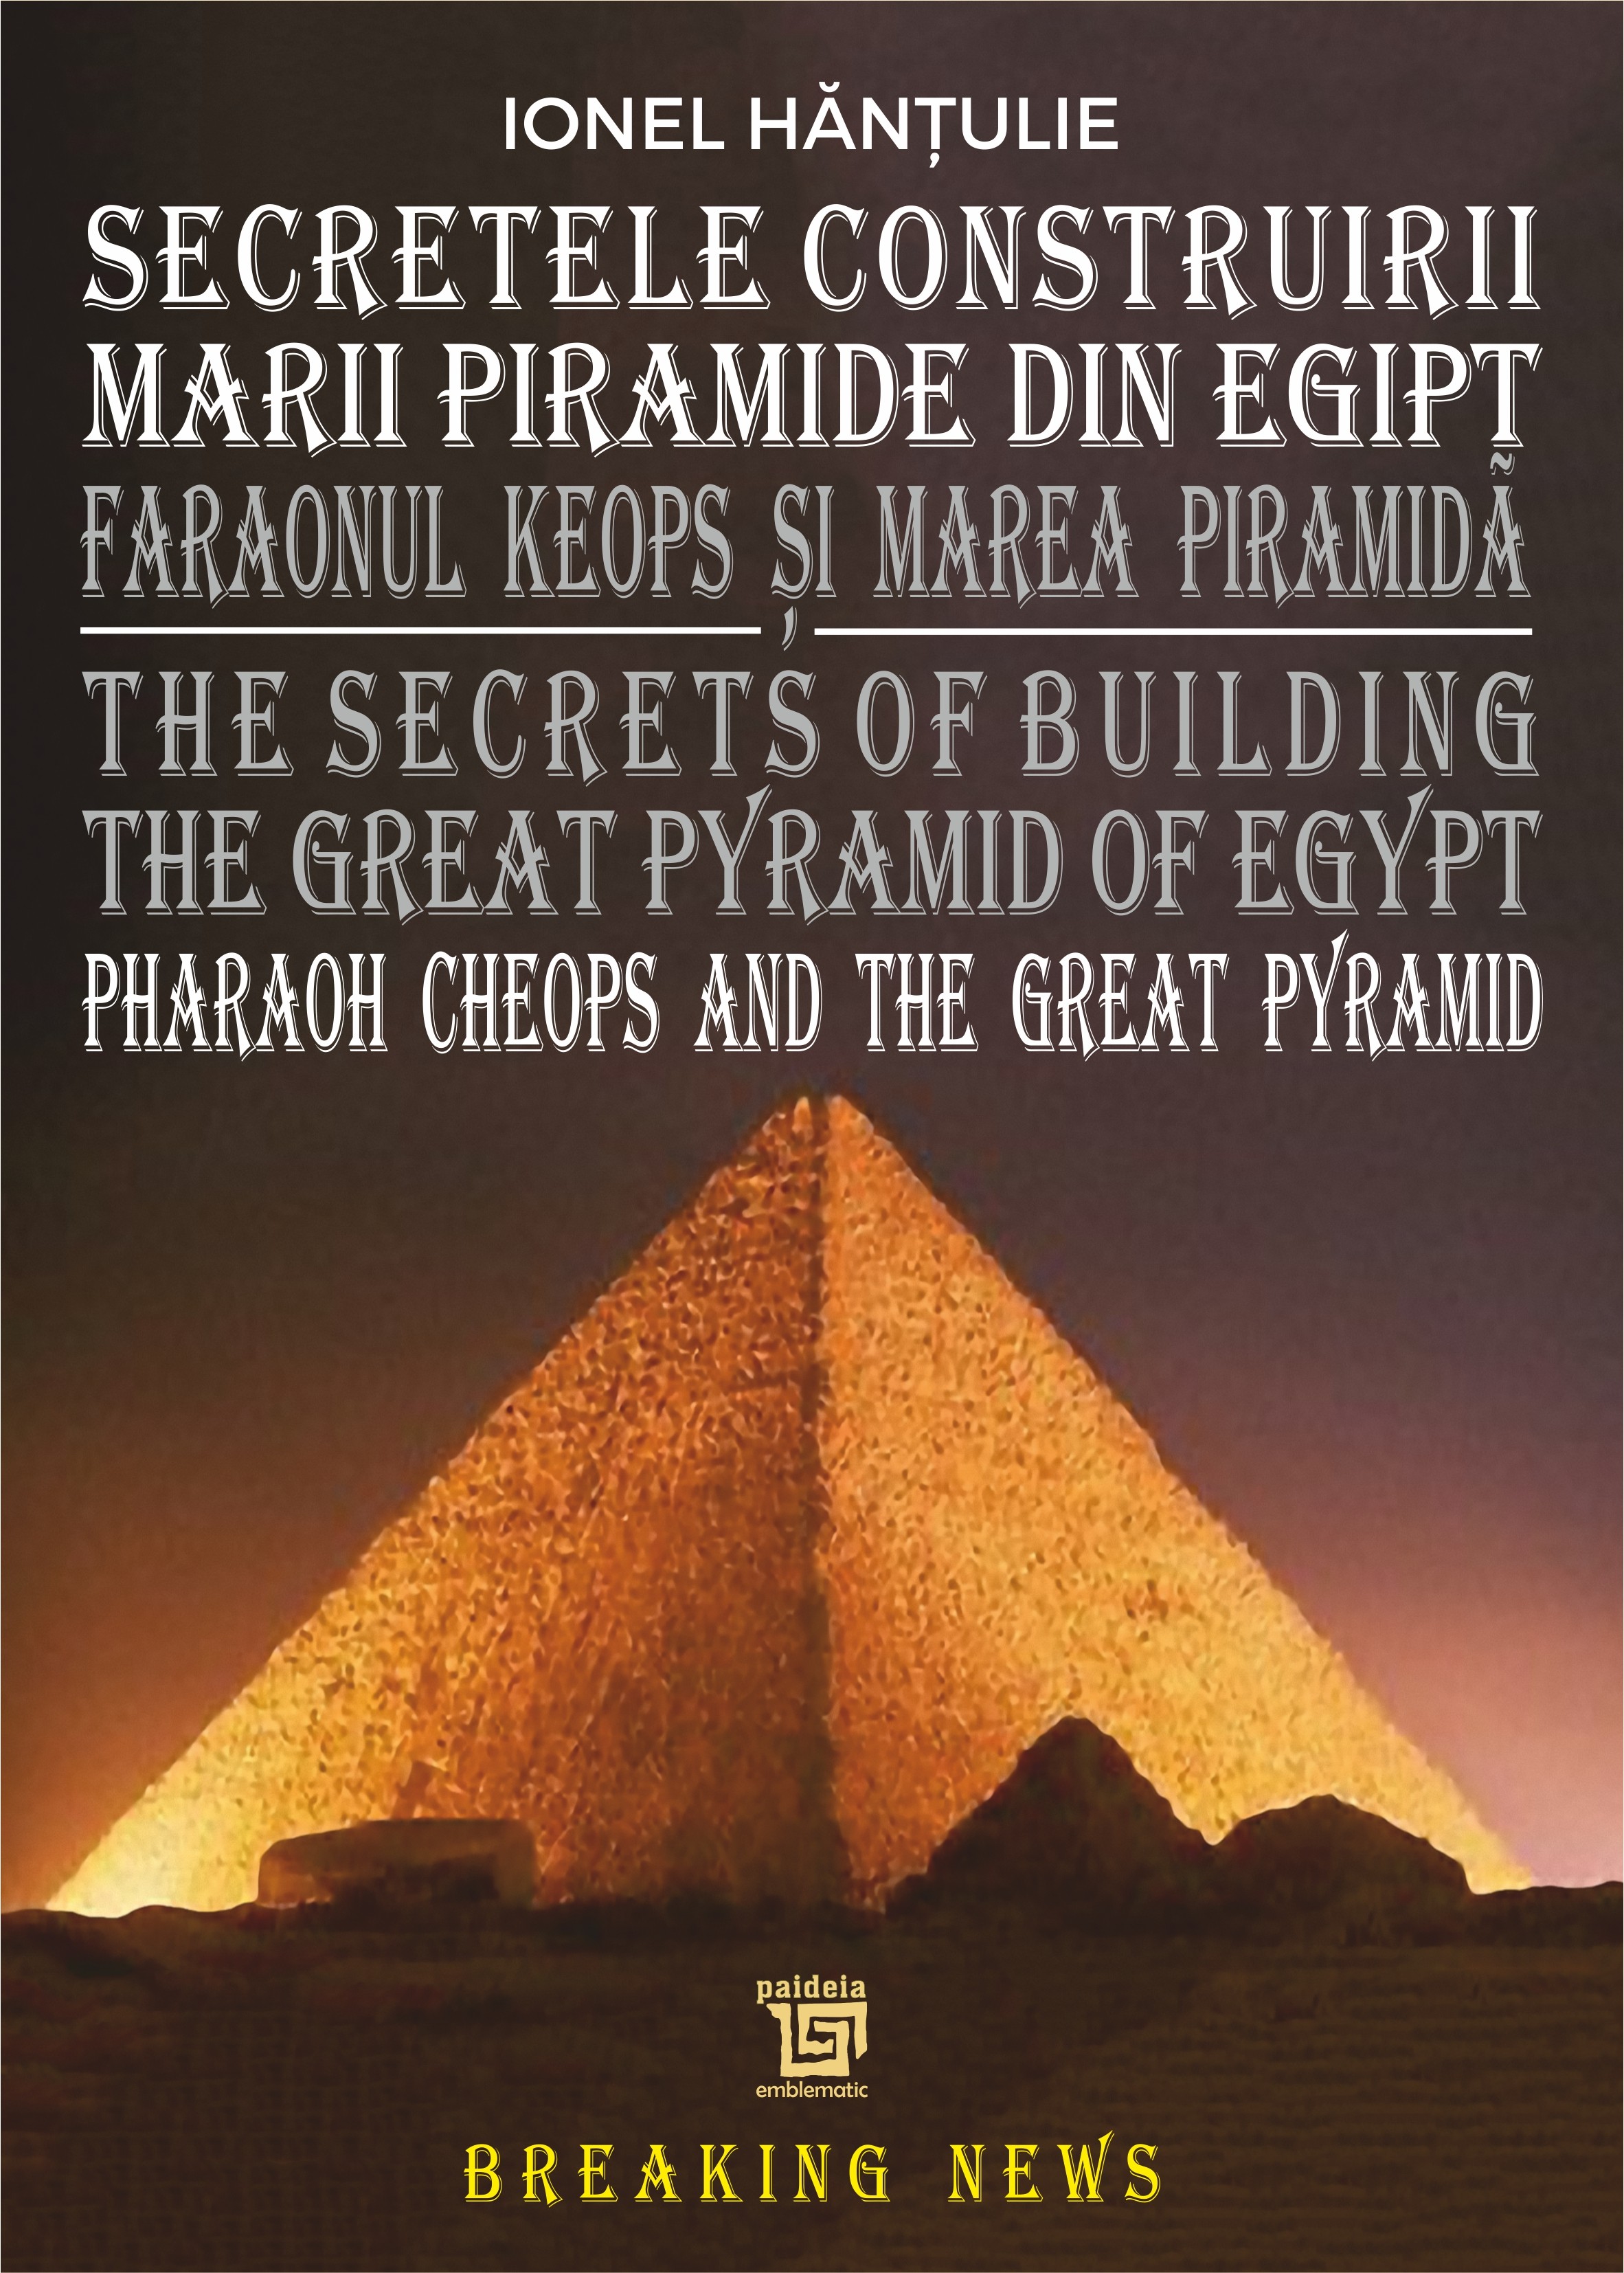 latch fellowship Confused Secretele Construirii Marii Piramide din Egipt - Hantulie Ionel - Paideia -  Editura cărților de cultură